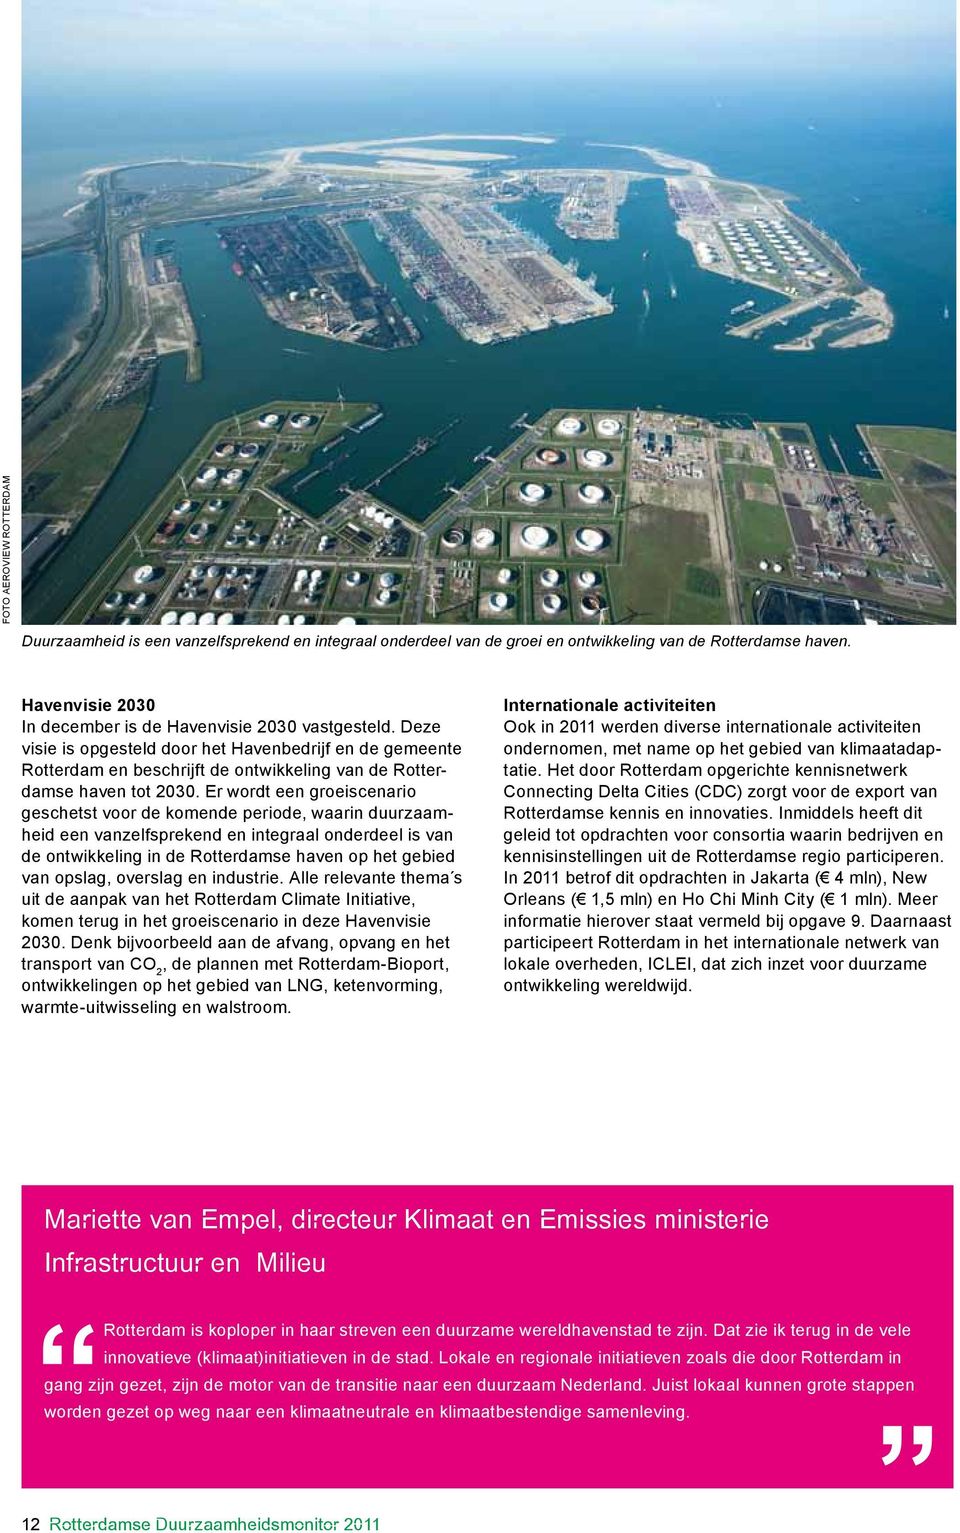 Er wordt een groeiscenario geschetst voor de komende periode, waarin duurzaamheid een vanzelfsprekend en integraal onderdeel is van de ontwikkeling in de Rotterdamse haven op het gebied van opslag,